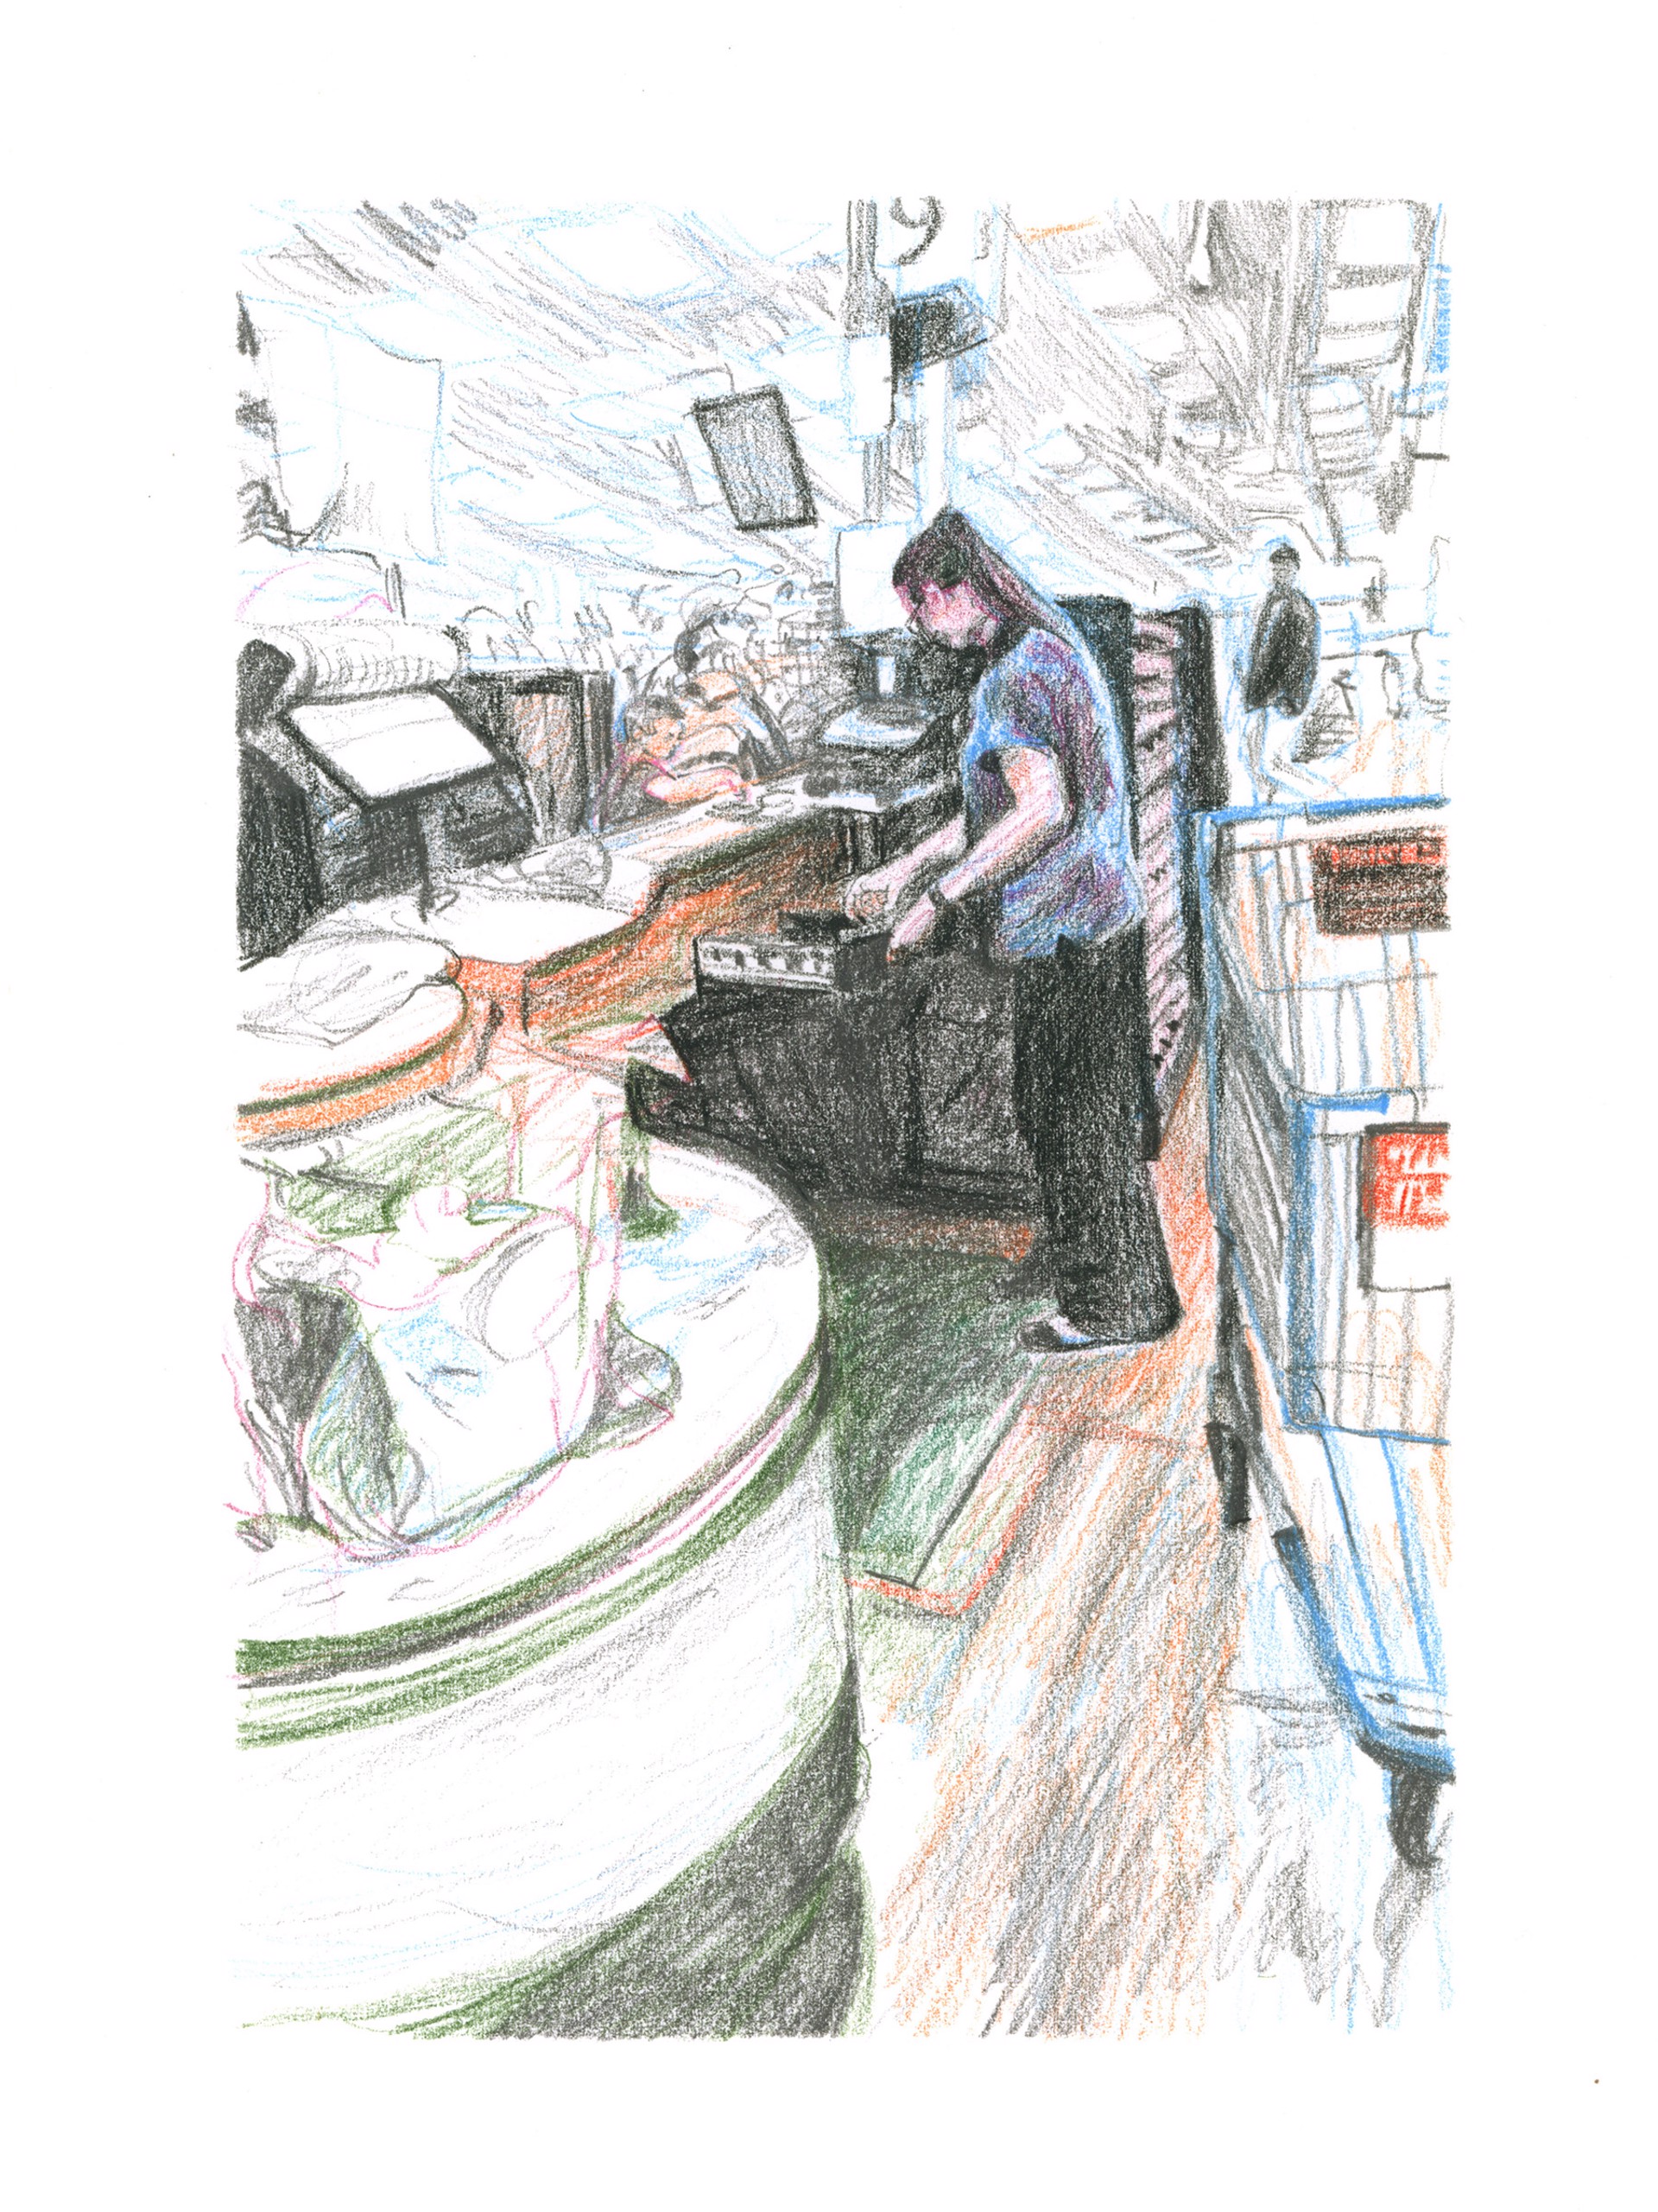 Marketplace/Cashier #45 by Eilis Crean